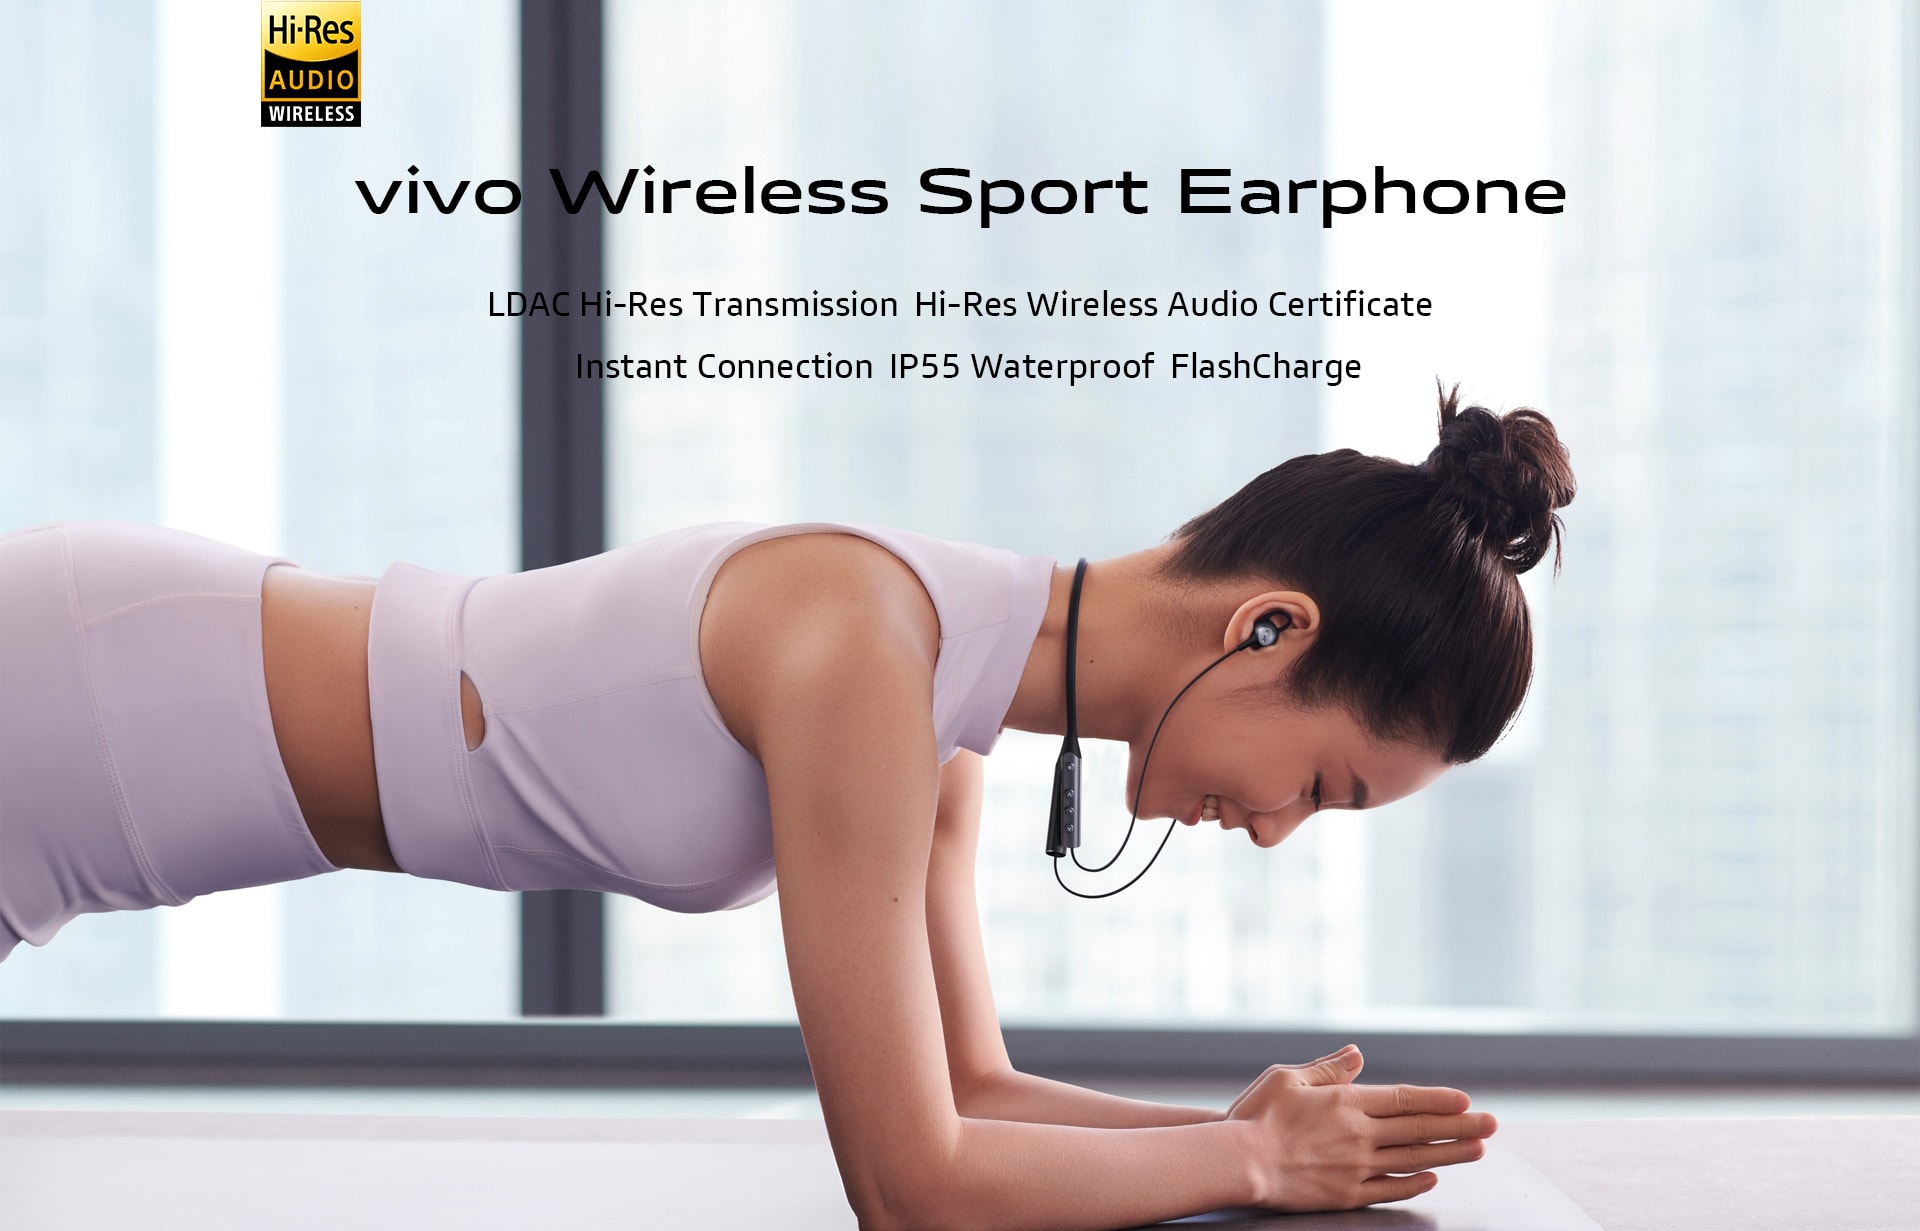 Vivo Wireless Sport. Vivo sports